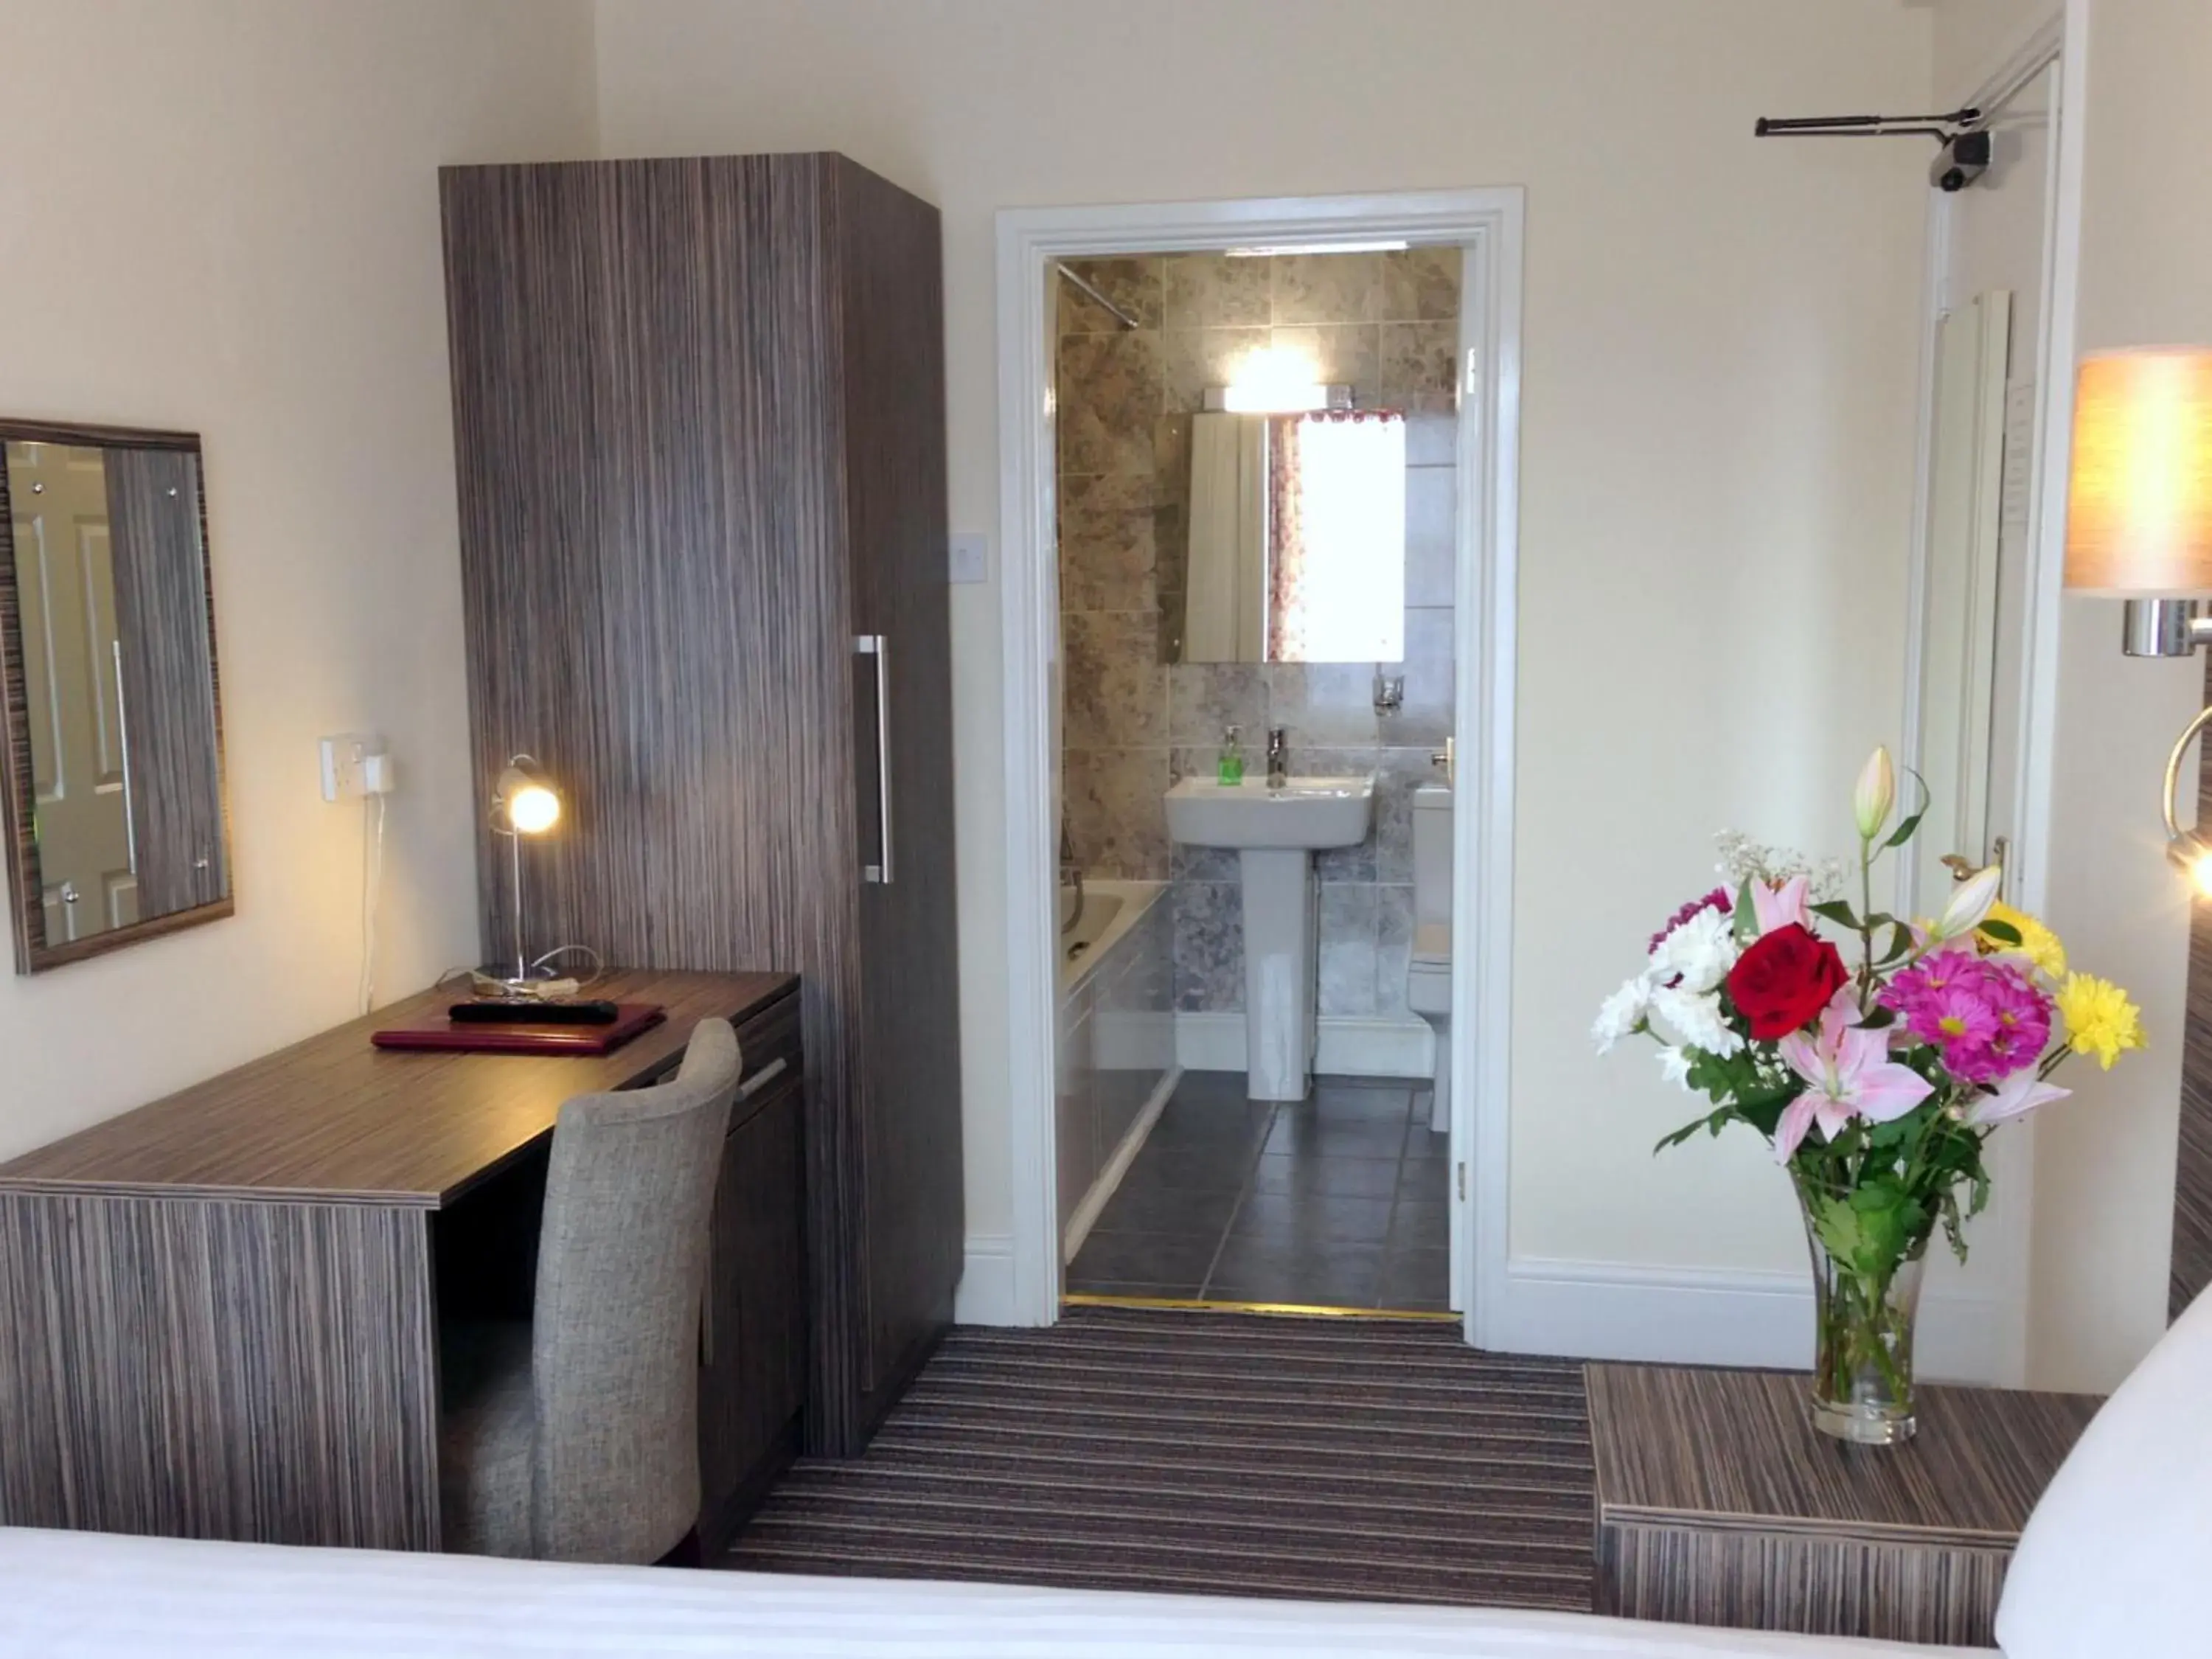 Bedroom, Bathroom in Ely House Hotel